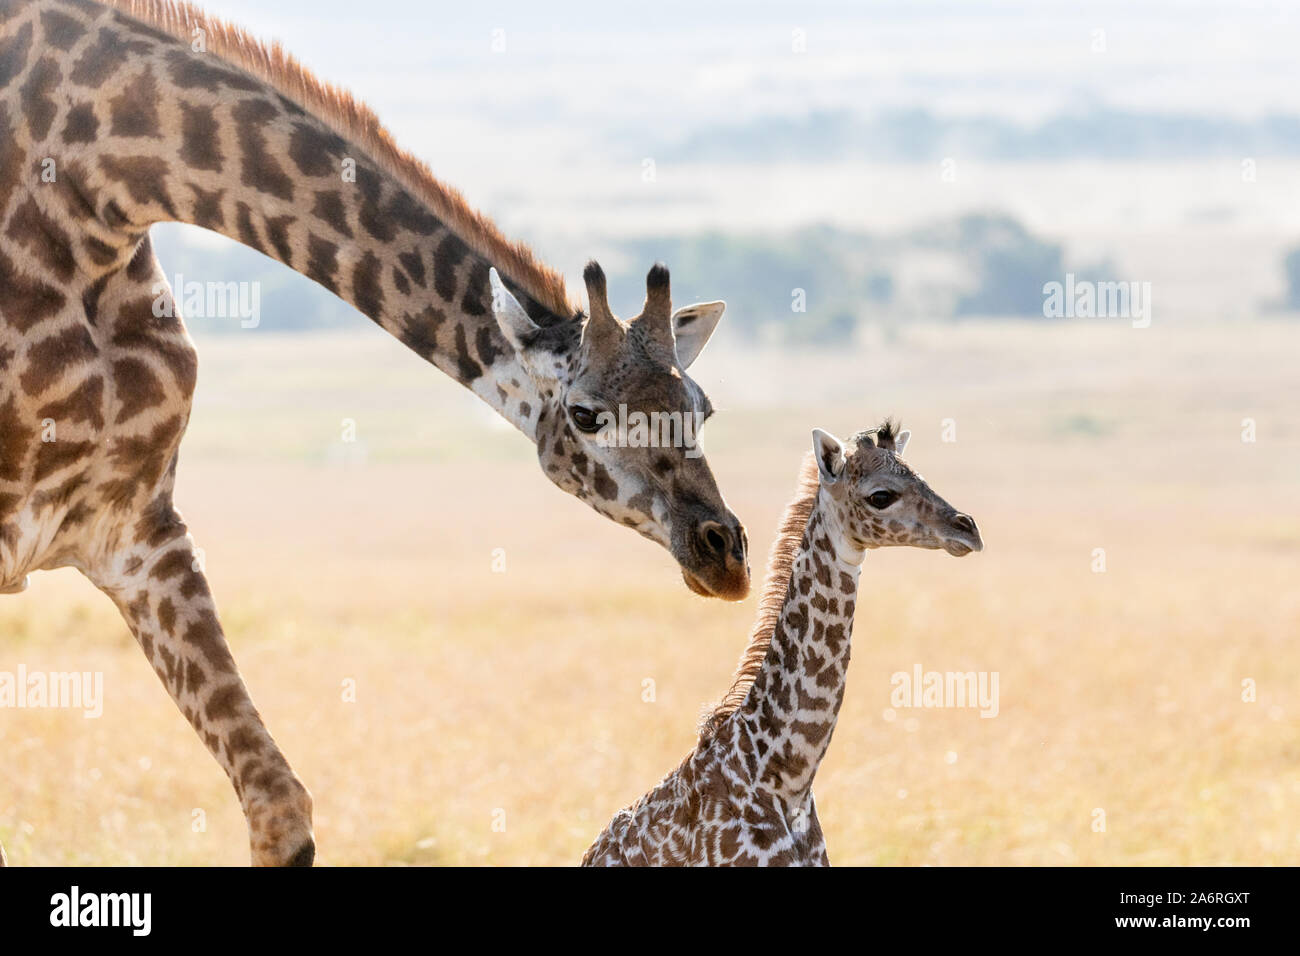 Masai Mara, Kenia, Afrika: Mutter Giraffe mit ihrer jungen Kalb. HEARTBREAKING Bilder zeigen eine Mutter giraffe versehentlich brechen ne's Ihr neugeborenes Kalb Stockfoto